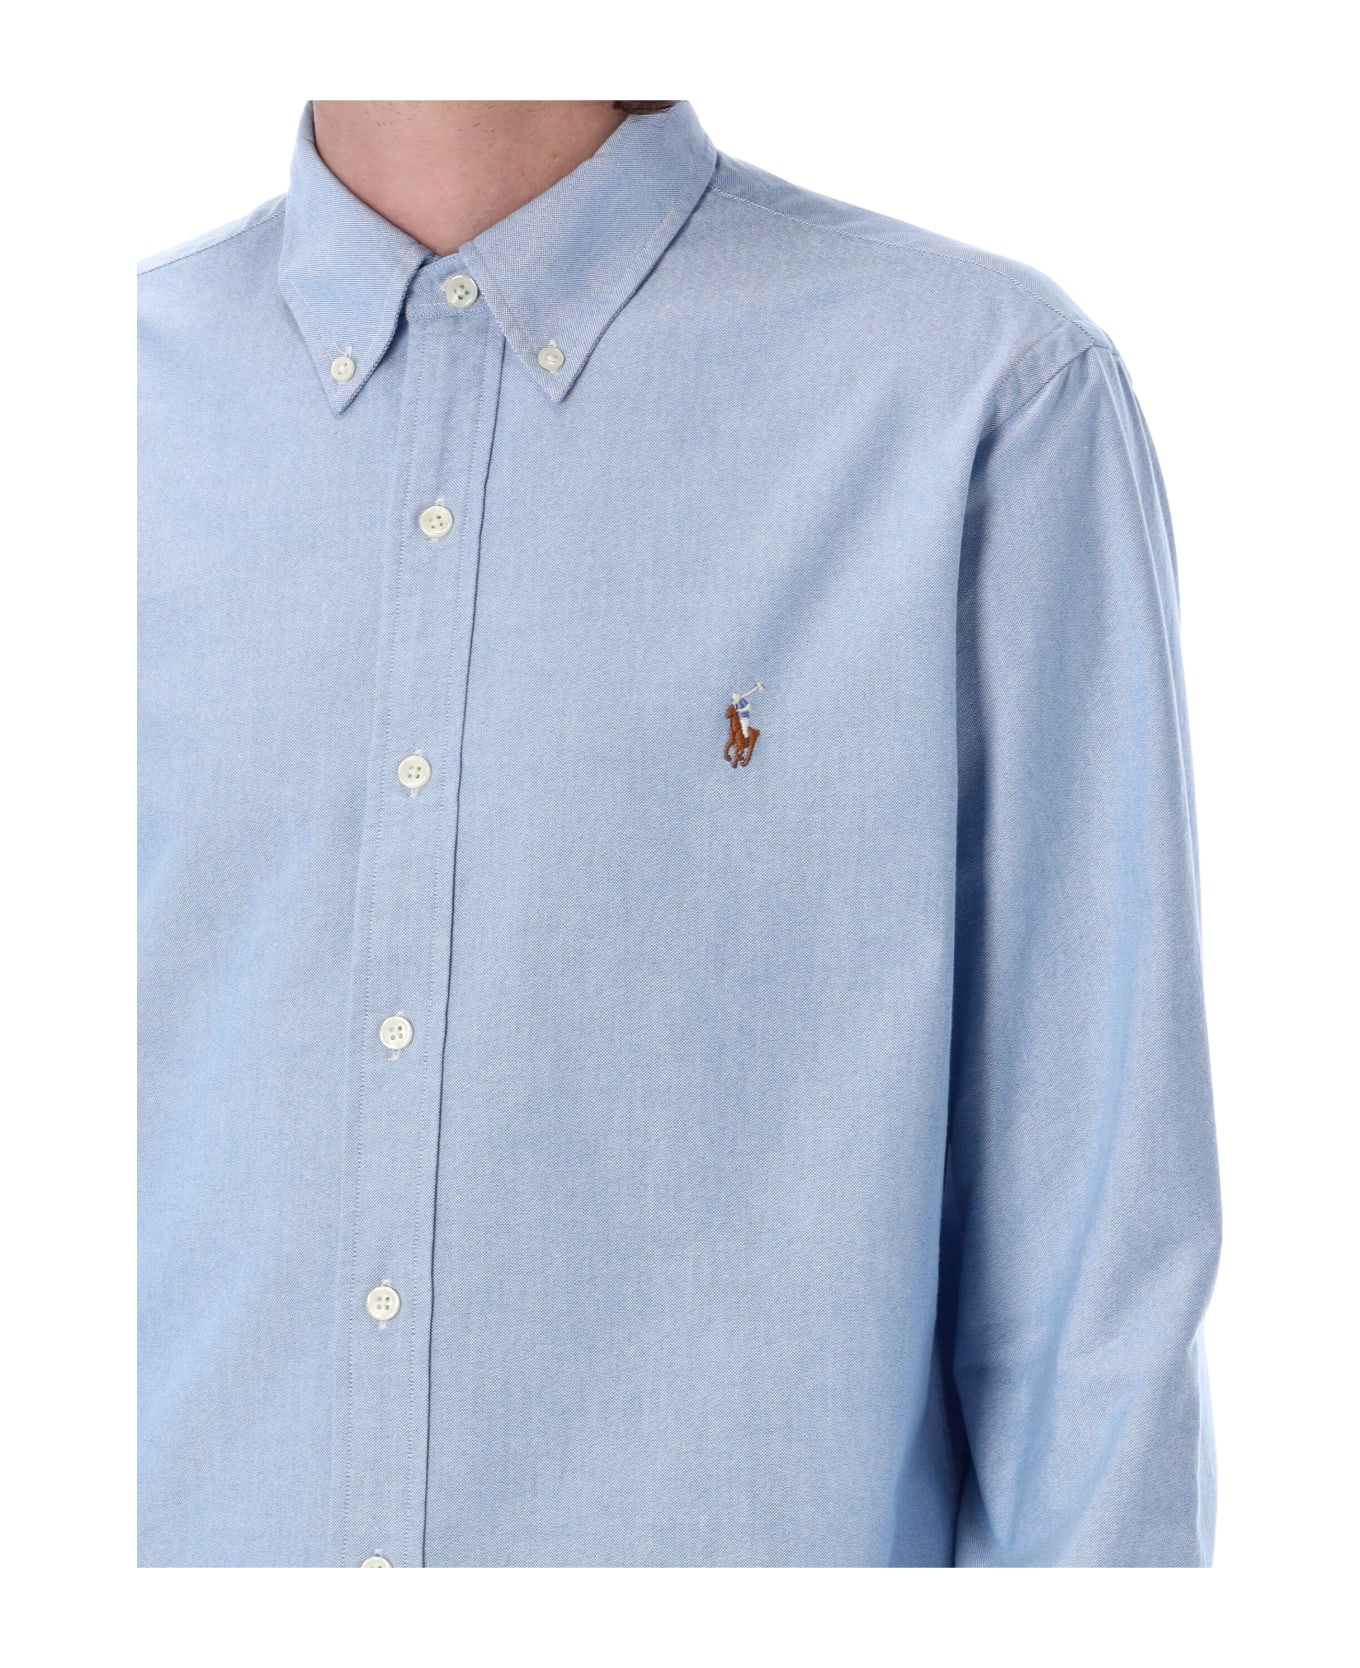 Polo Ralph Lauren Custom Fit Shirt - LIGHT BLUE